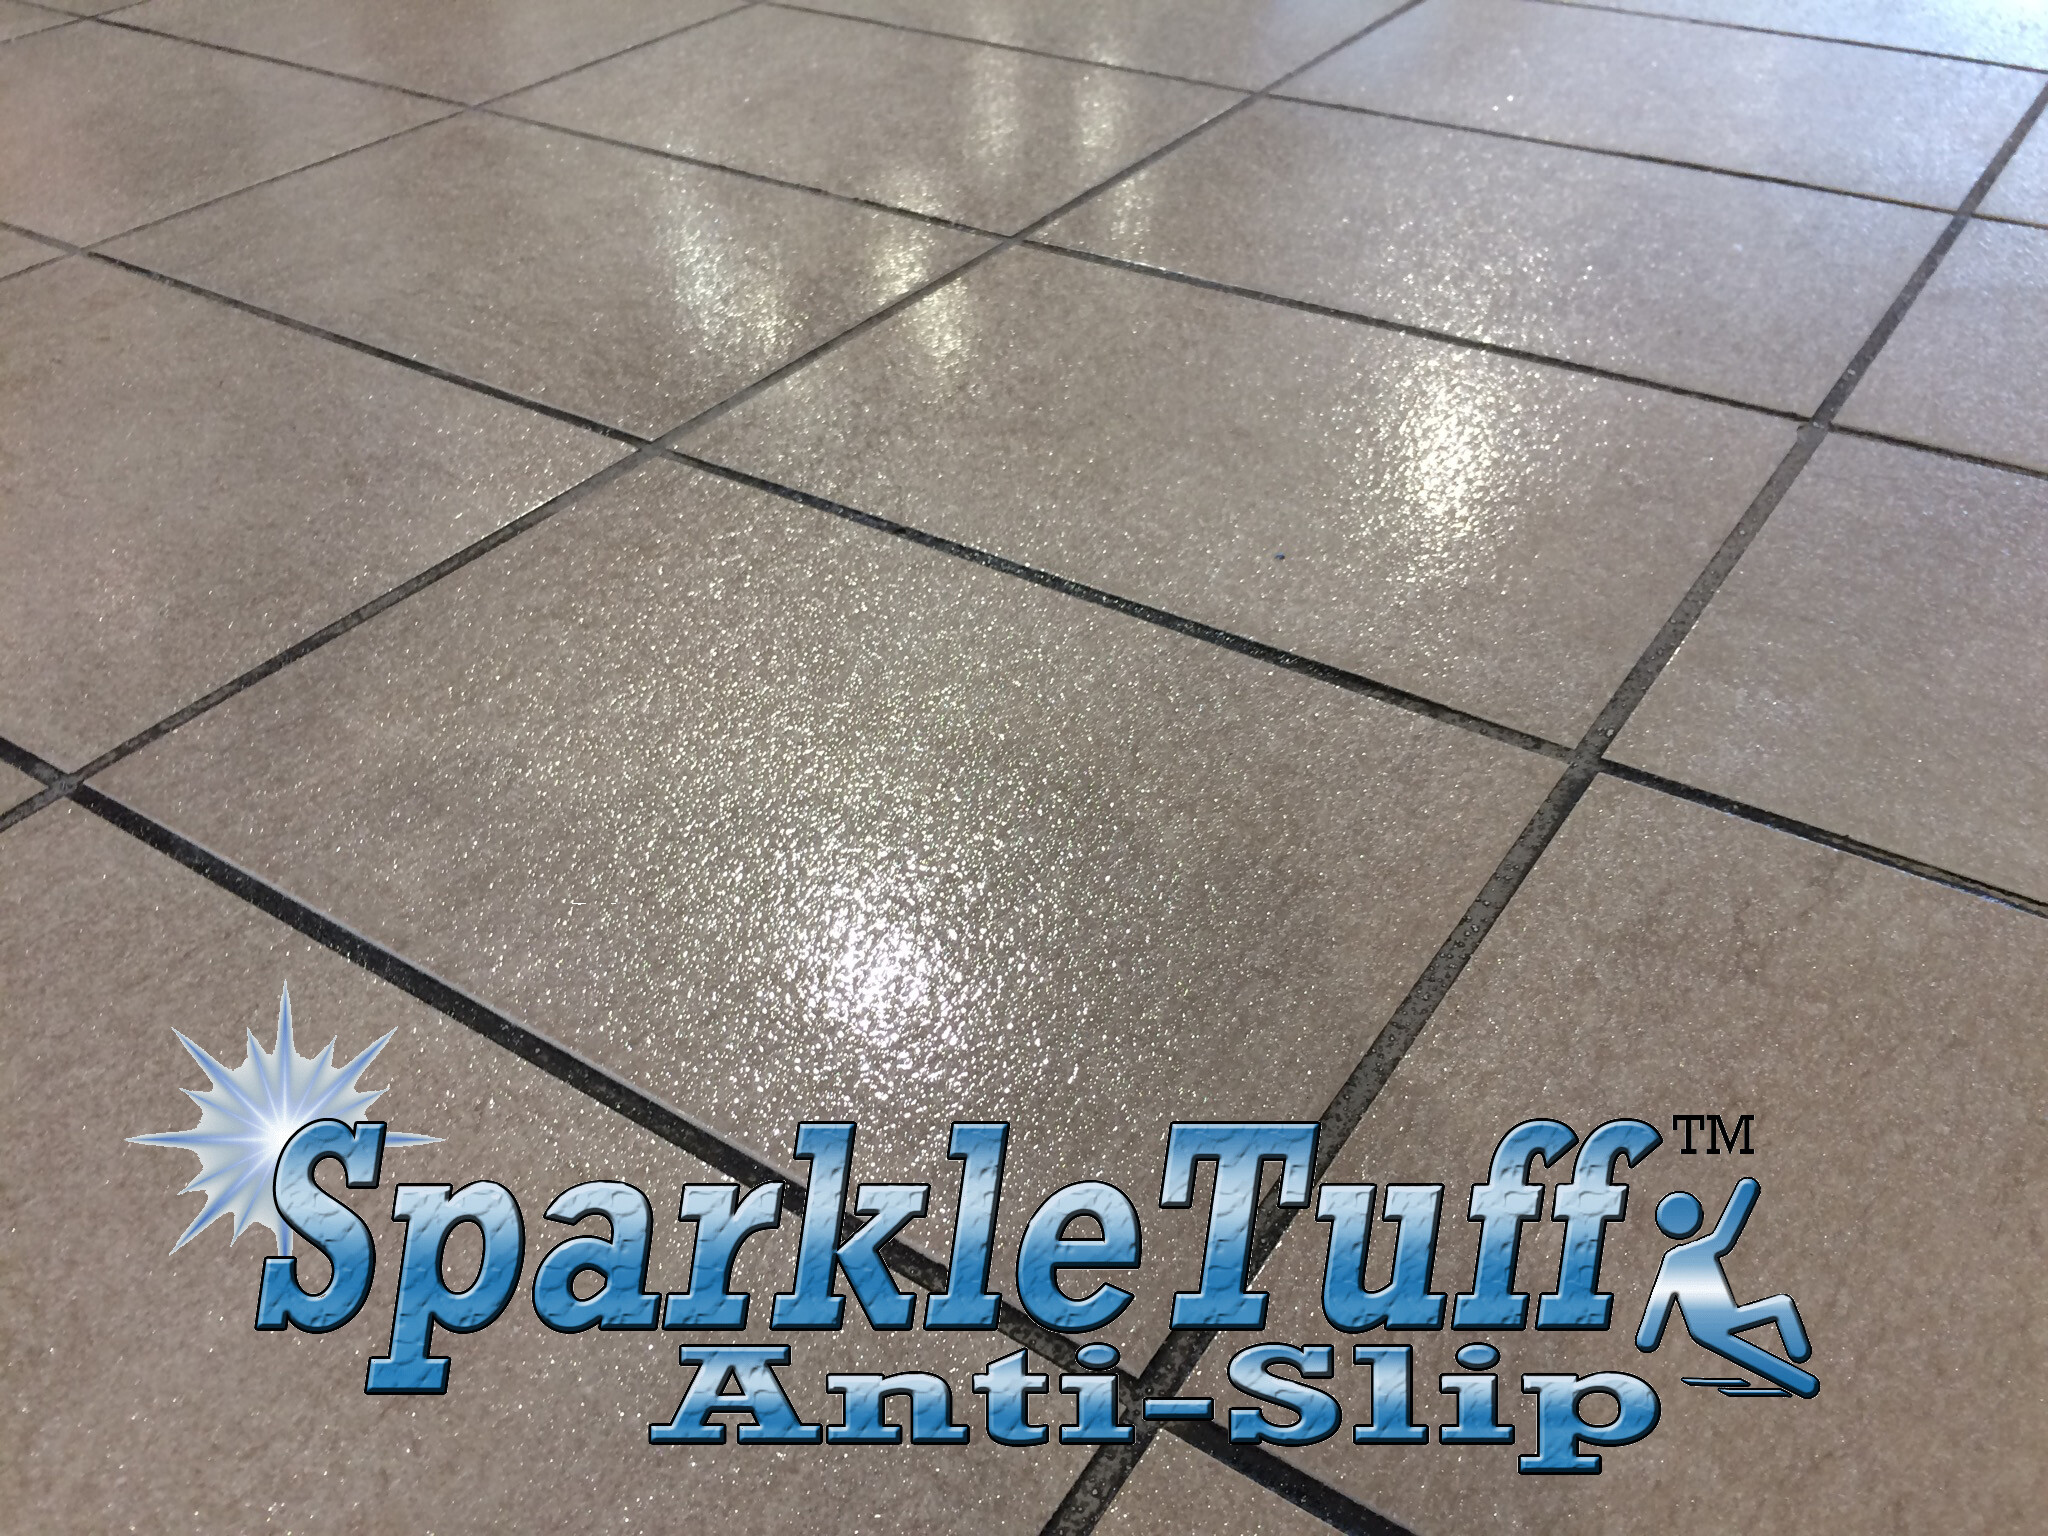 Sparkletuff Anti Slip Floor Coating, Why Are My Tile Floors Slippery